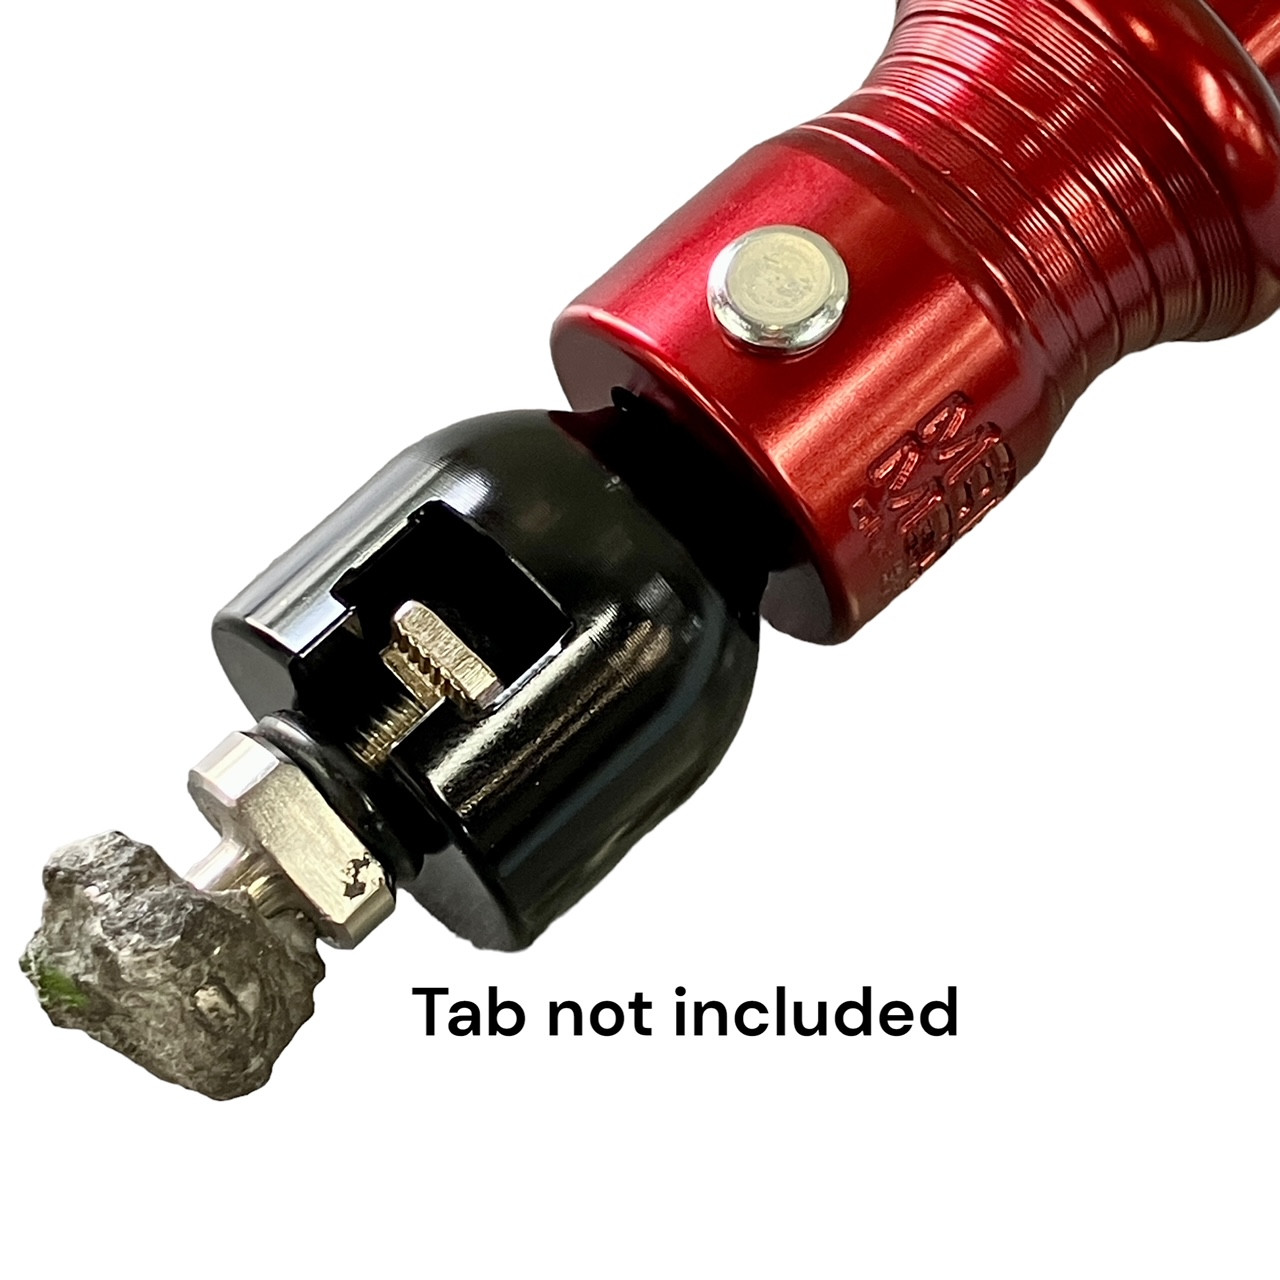 Hot Glue Tab Adapter